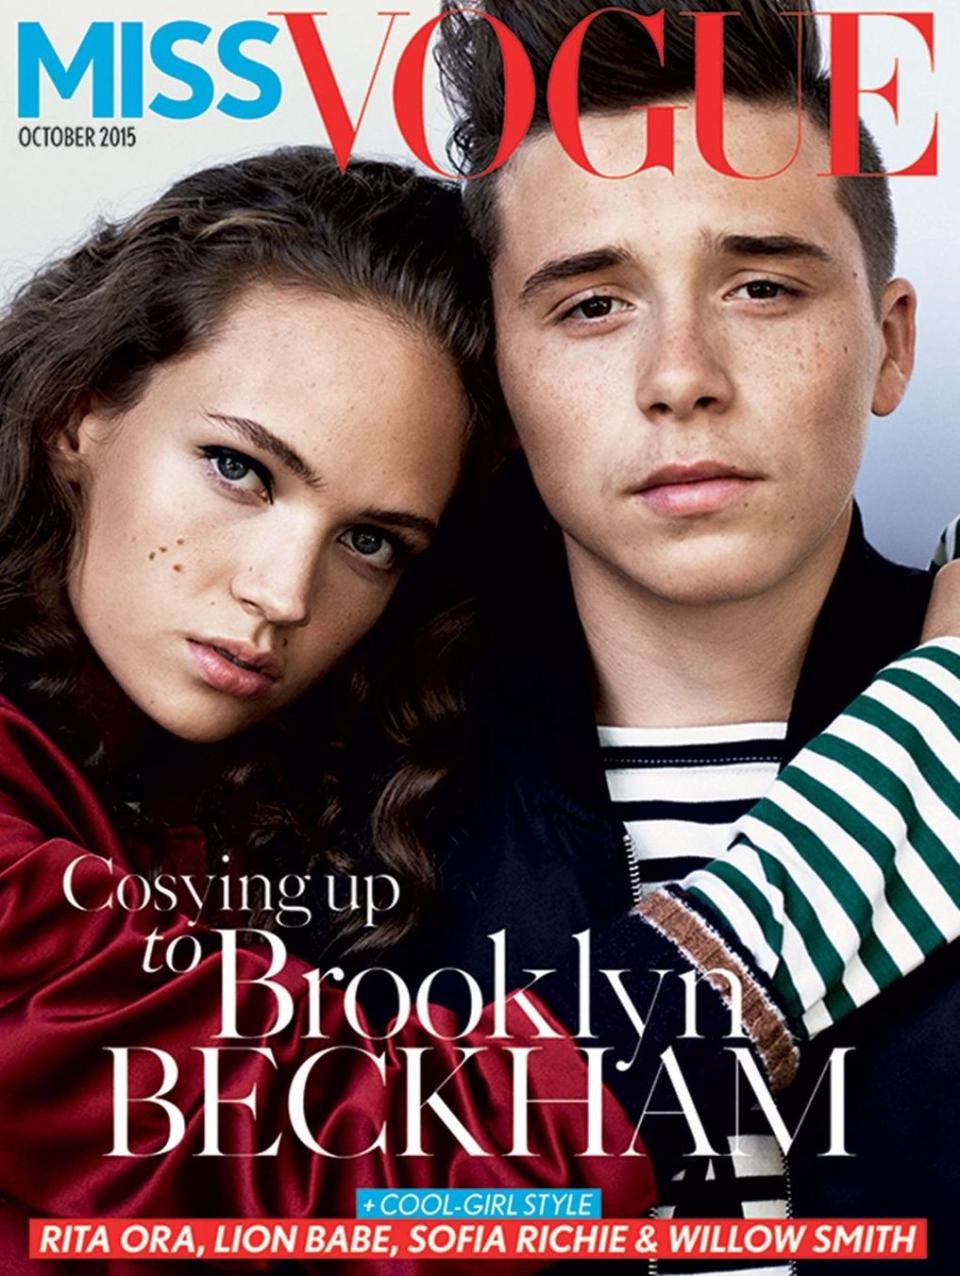 <p>Sobald er das erste Titelbild in der Tasche hatte, gab es kein Halten mehr für Brooklyn Beckham, der Teenagern mit seinem “Miss Vogue” Titelbild im Oktober 2015 den Kopf verdrehte.<br>[Foto: Miss Vogue] </p>